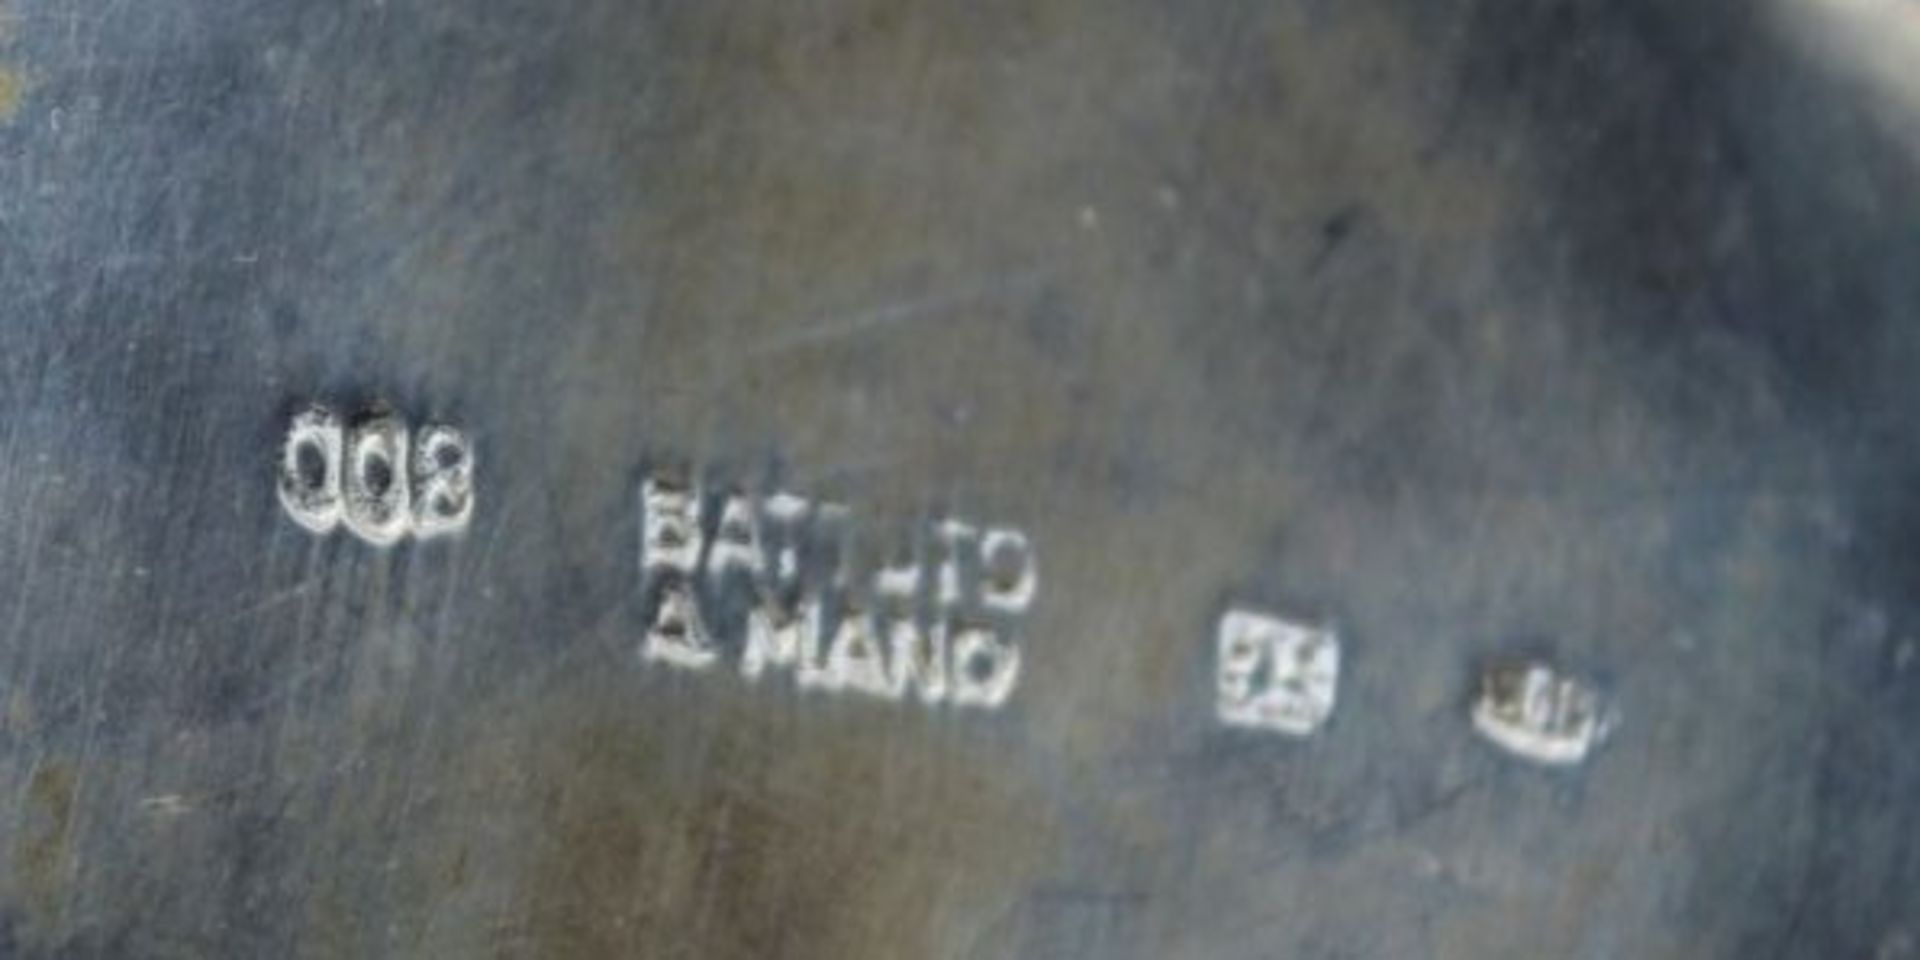 800er Silber Vase, gemarkt "800 Battudo a mano 29 P.", Hammerschlagdekor, 200gr., leider eine Beule, - Bild 2 aus 3